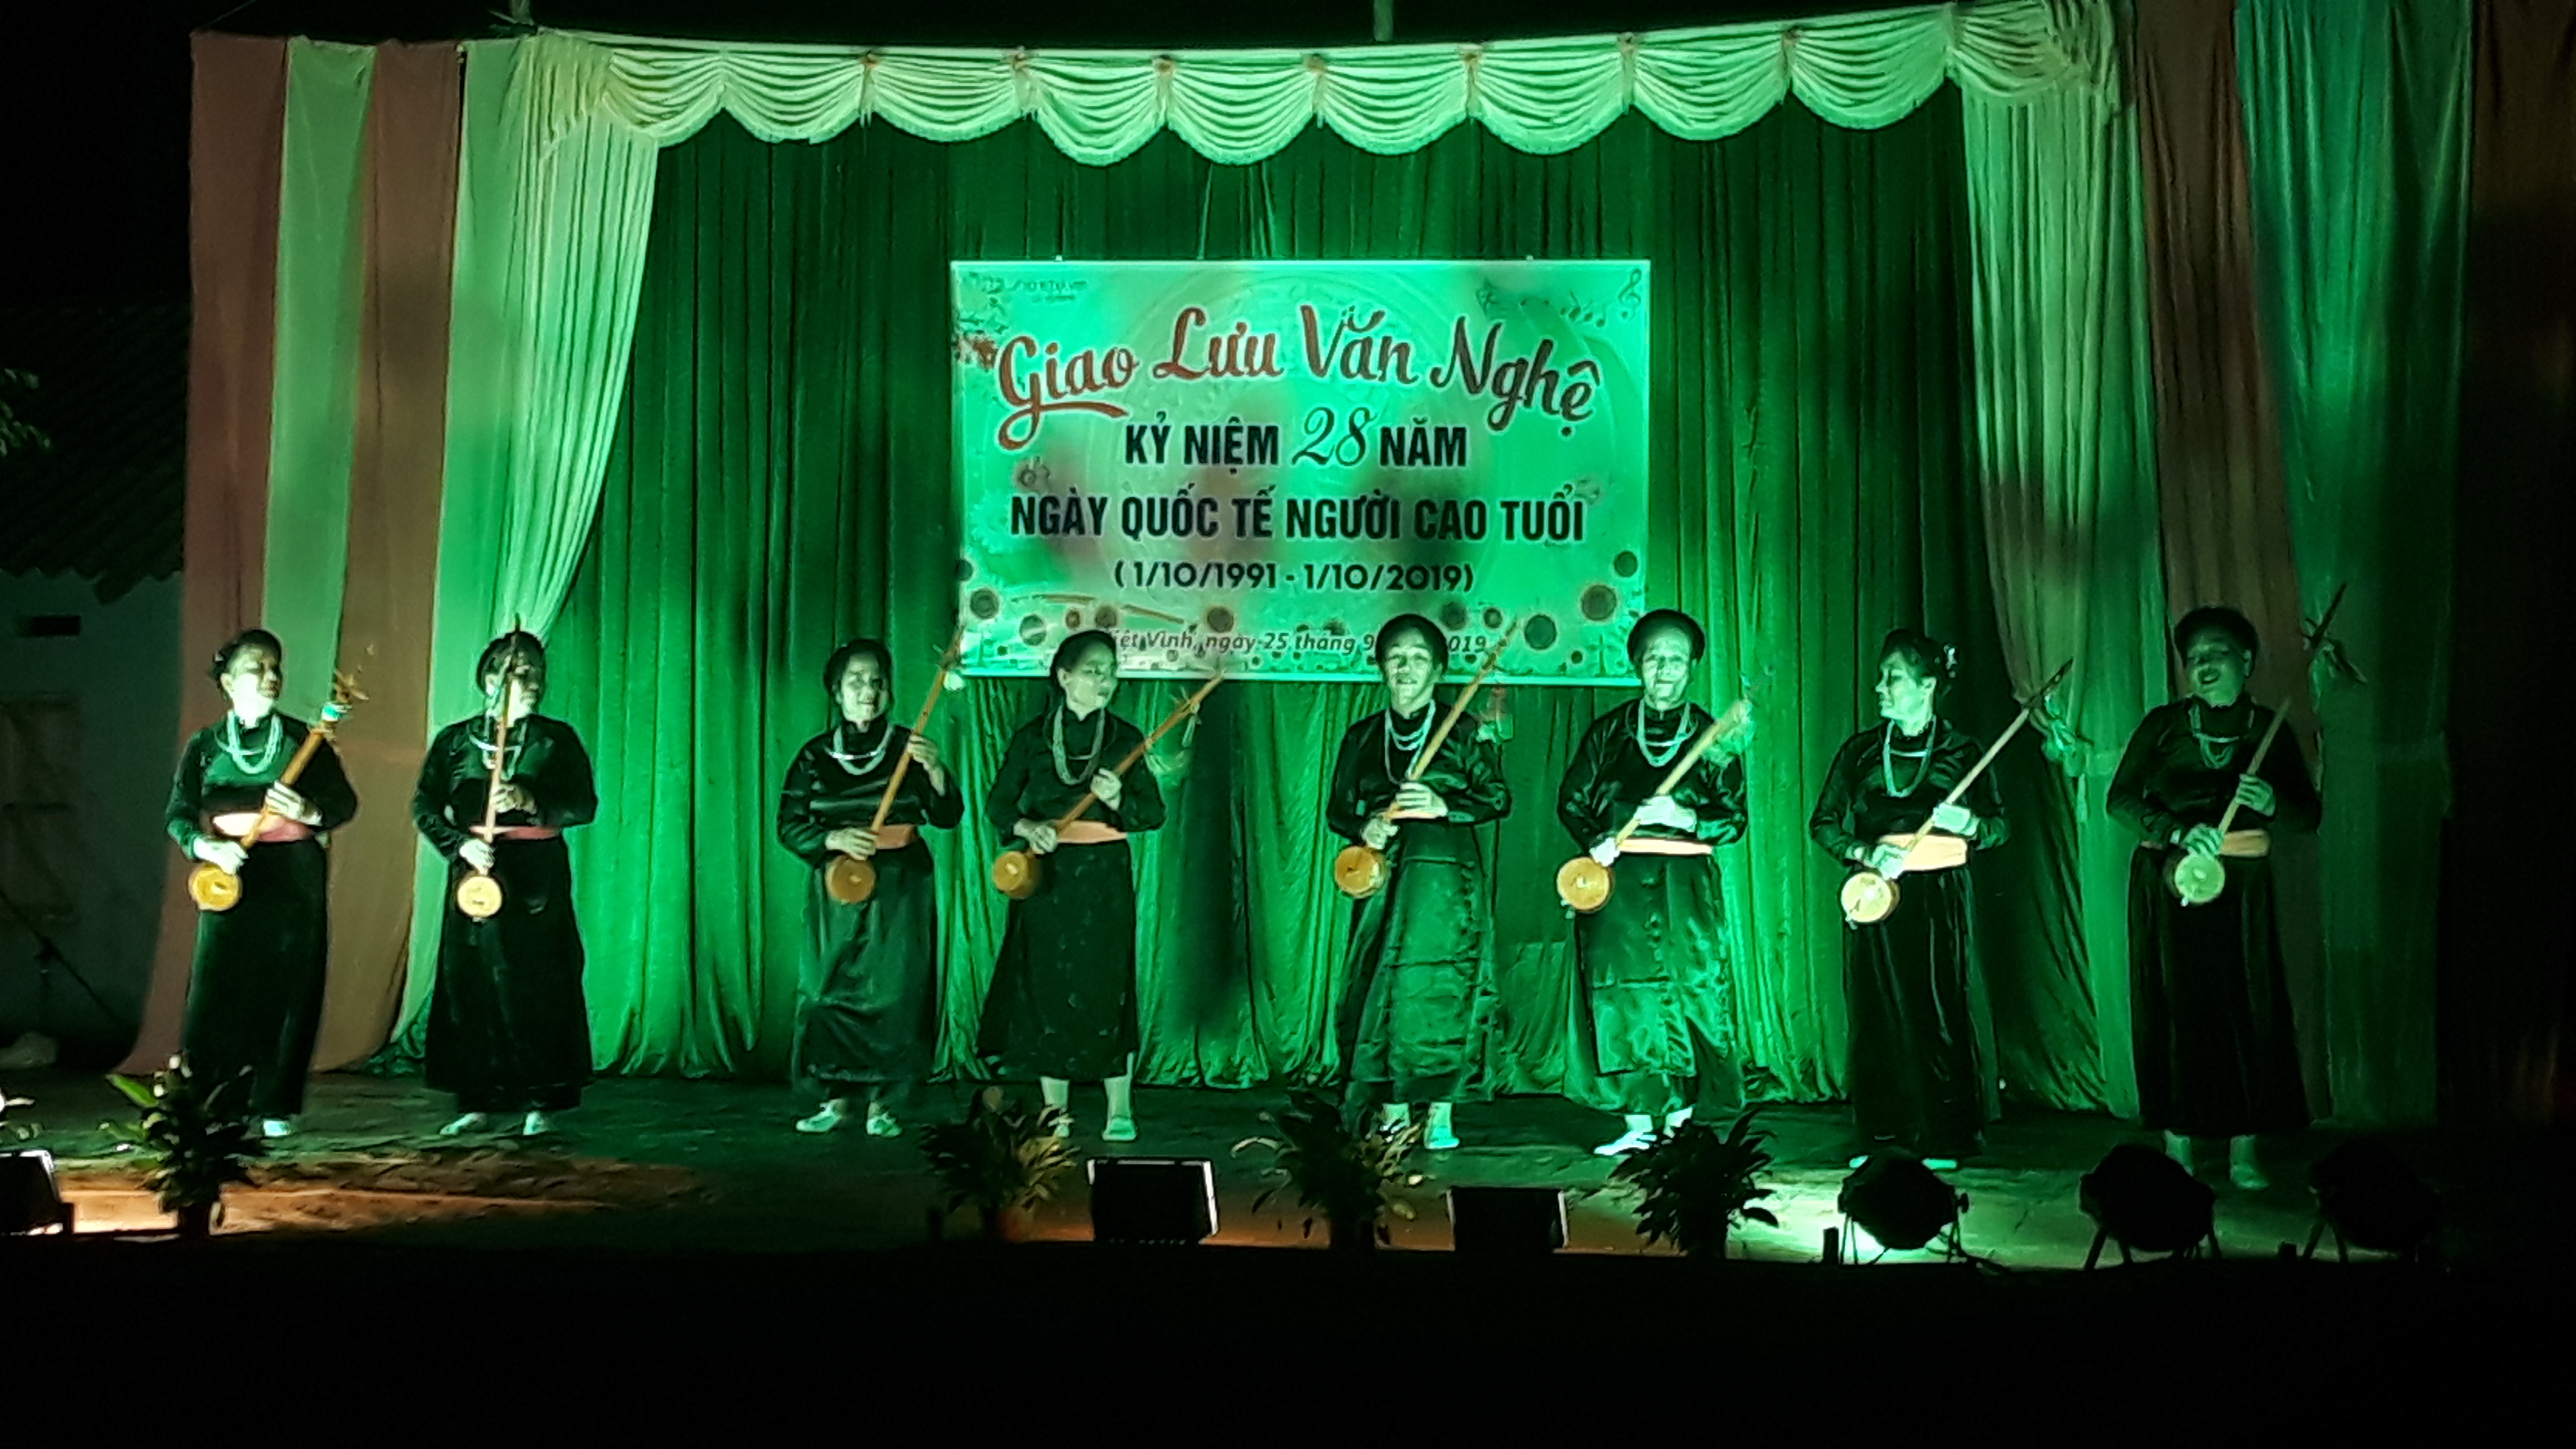 Giao lưu văn nghệ Tiếng hát người cao tuổi thôn Tân An xã Việt Vinh